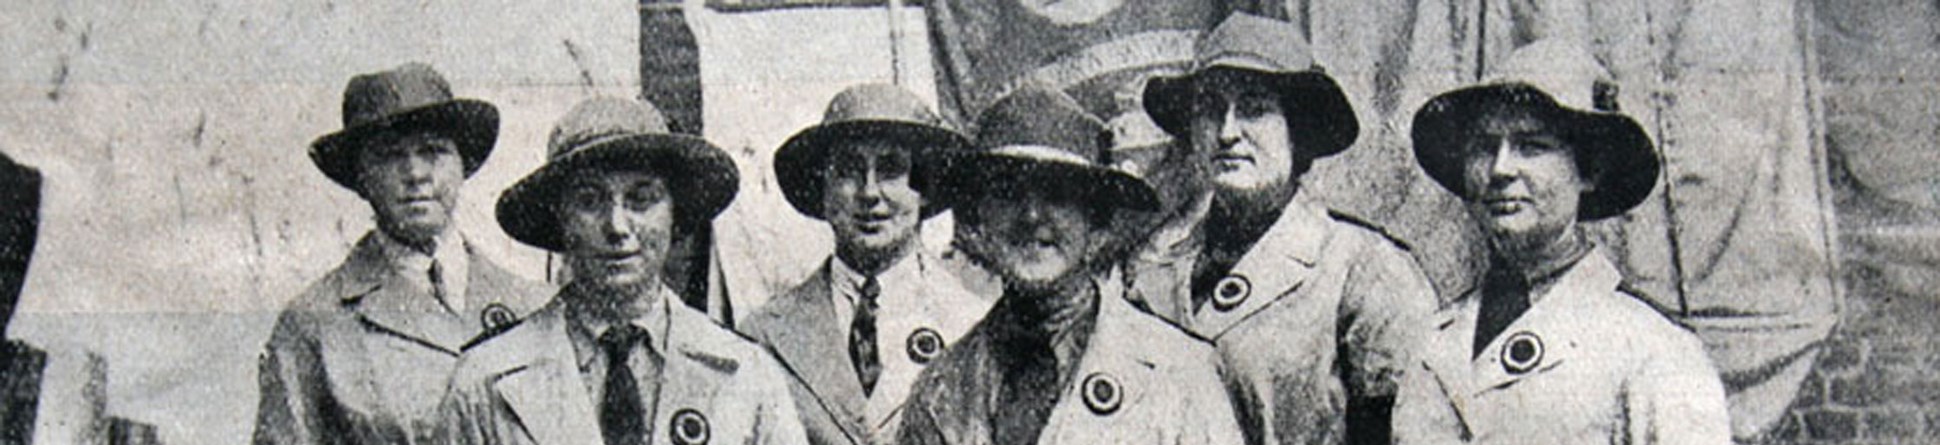 Land girls during the First World War